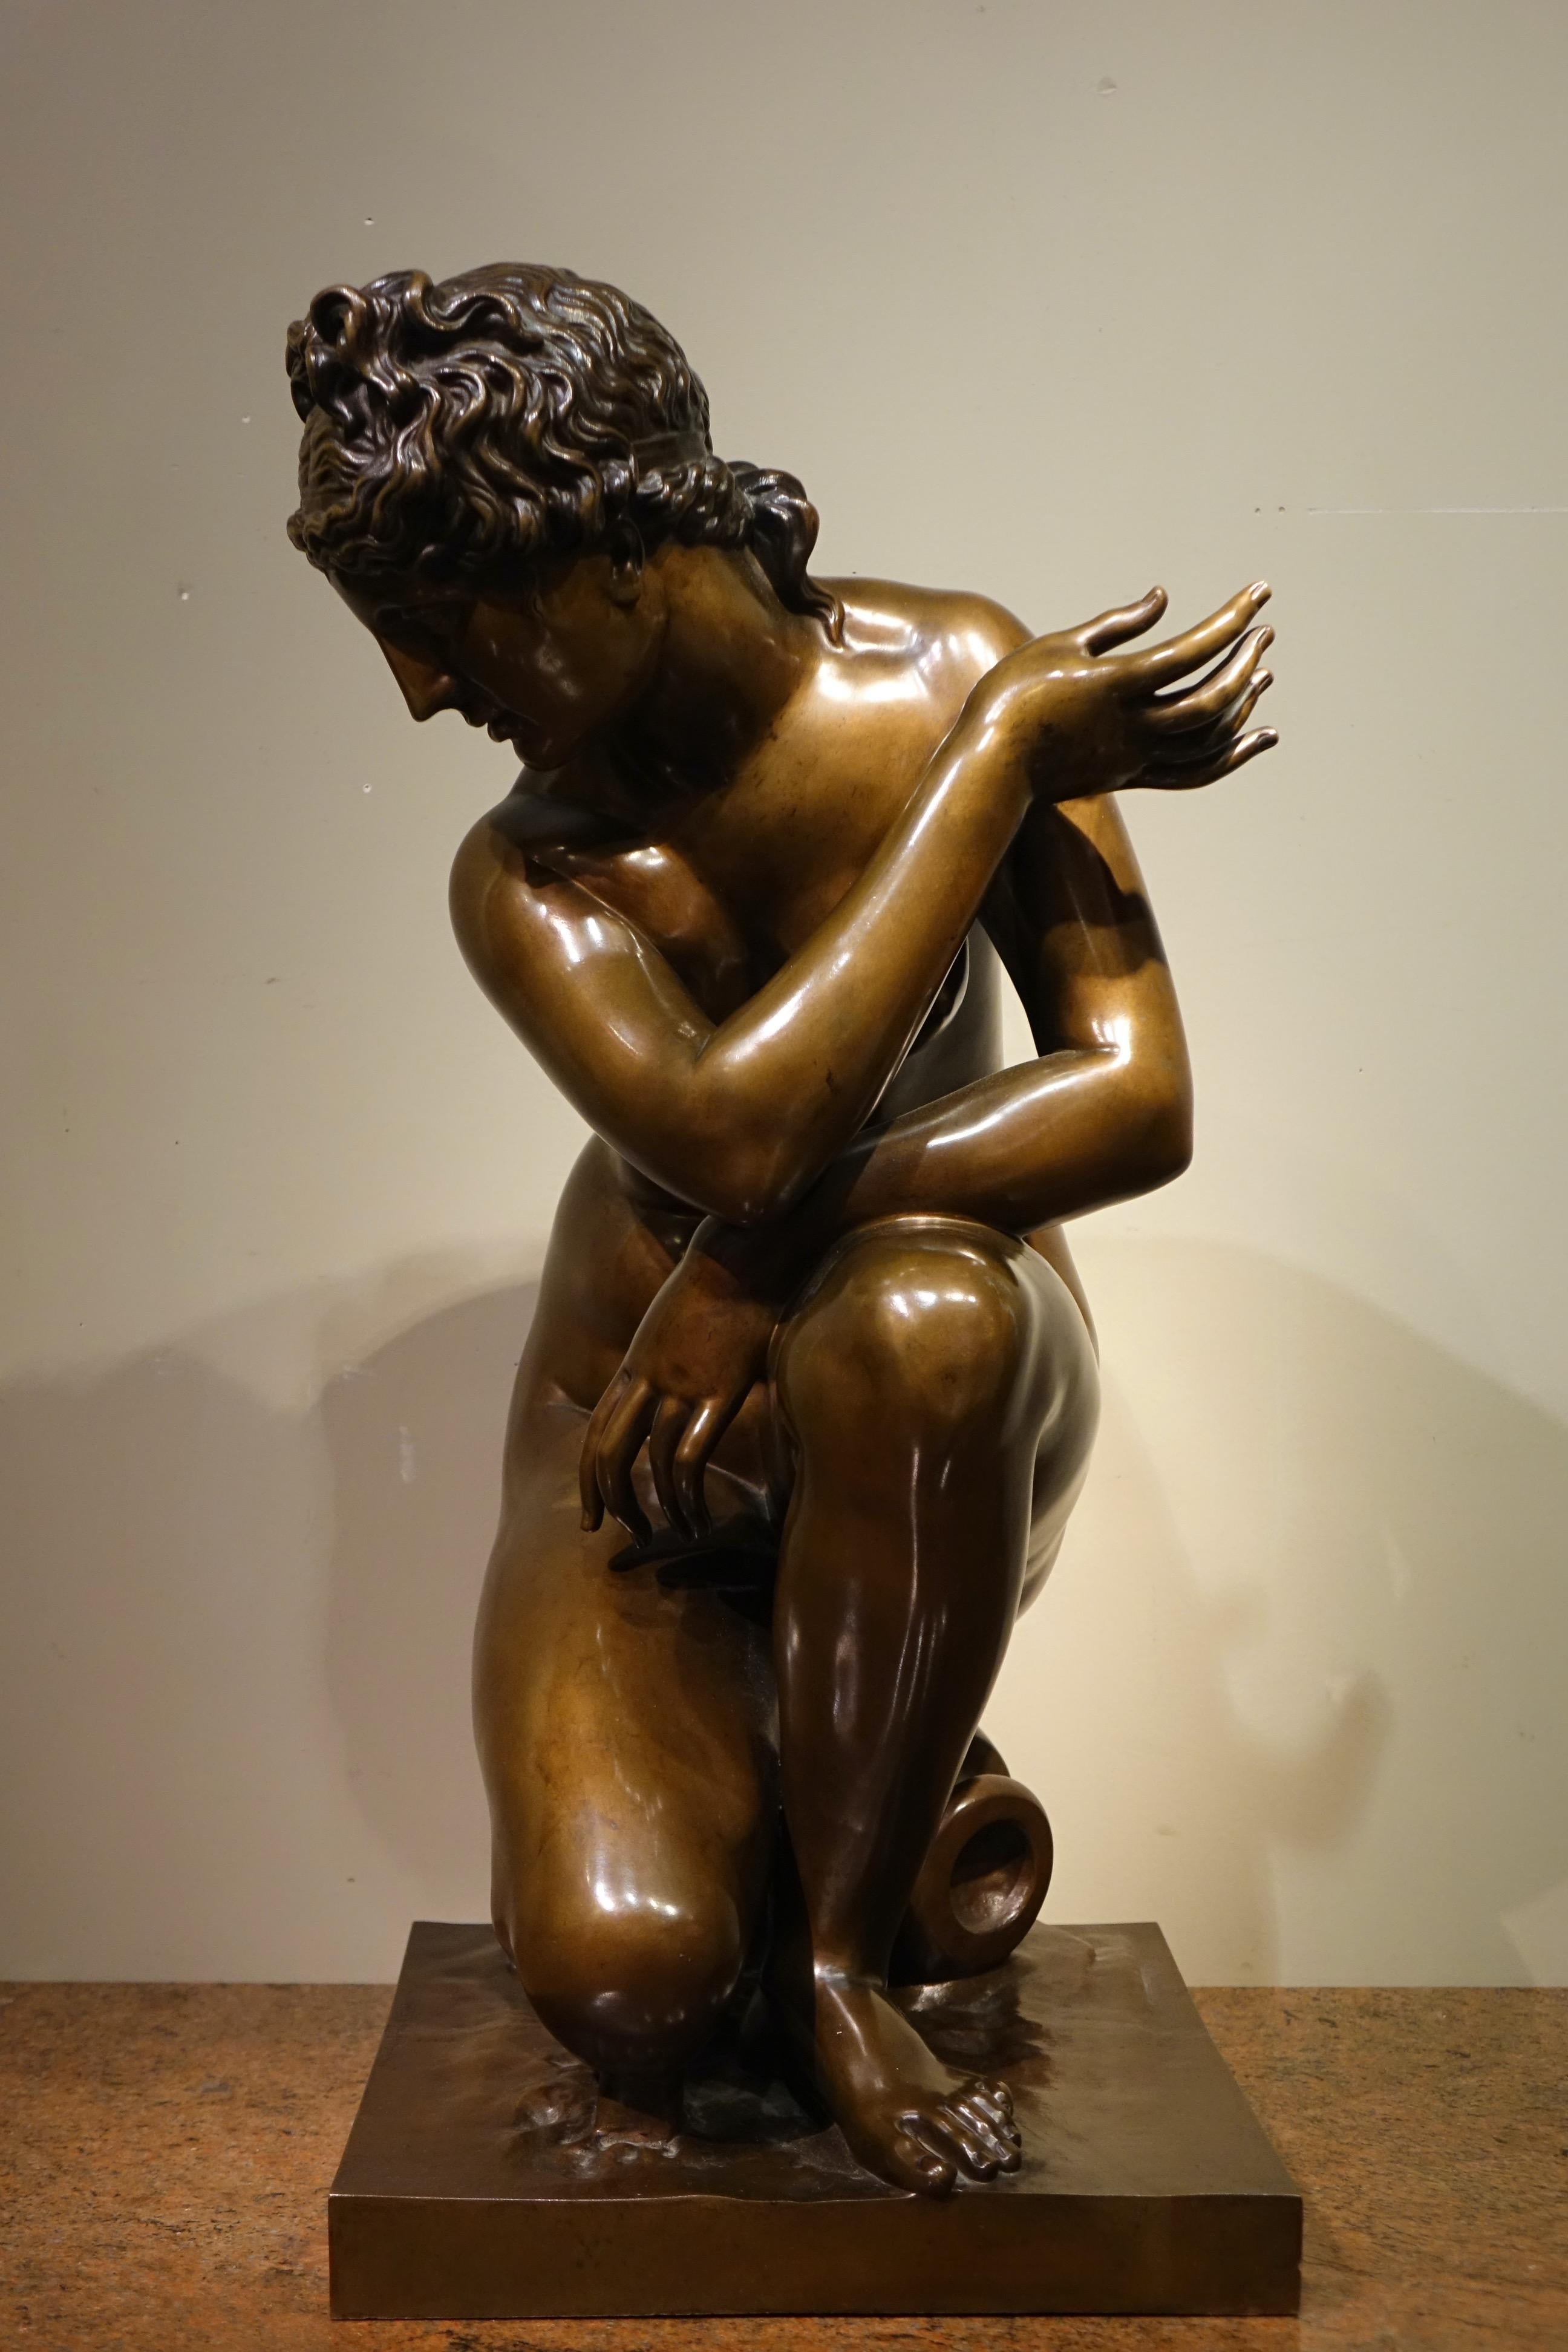 Große Bronze (Höhe: 0,63 m), mit Medaillenpatina, die Aphrodite, die Göttin der Liebe, in der Hocke darstellt. 
Dieses Werk ist eine Wiederbelebung des seit der Antike bekannten Themas der nackten Venus oder Aphrodite, das die Vorliebe für Bewegung